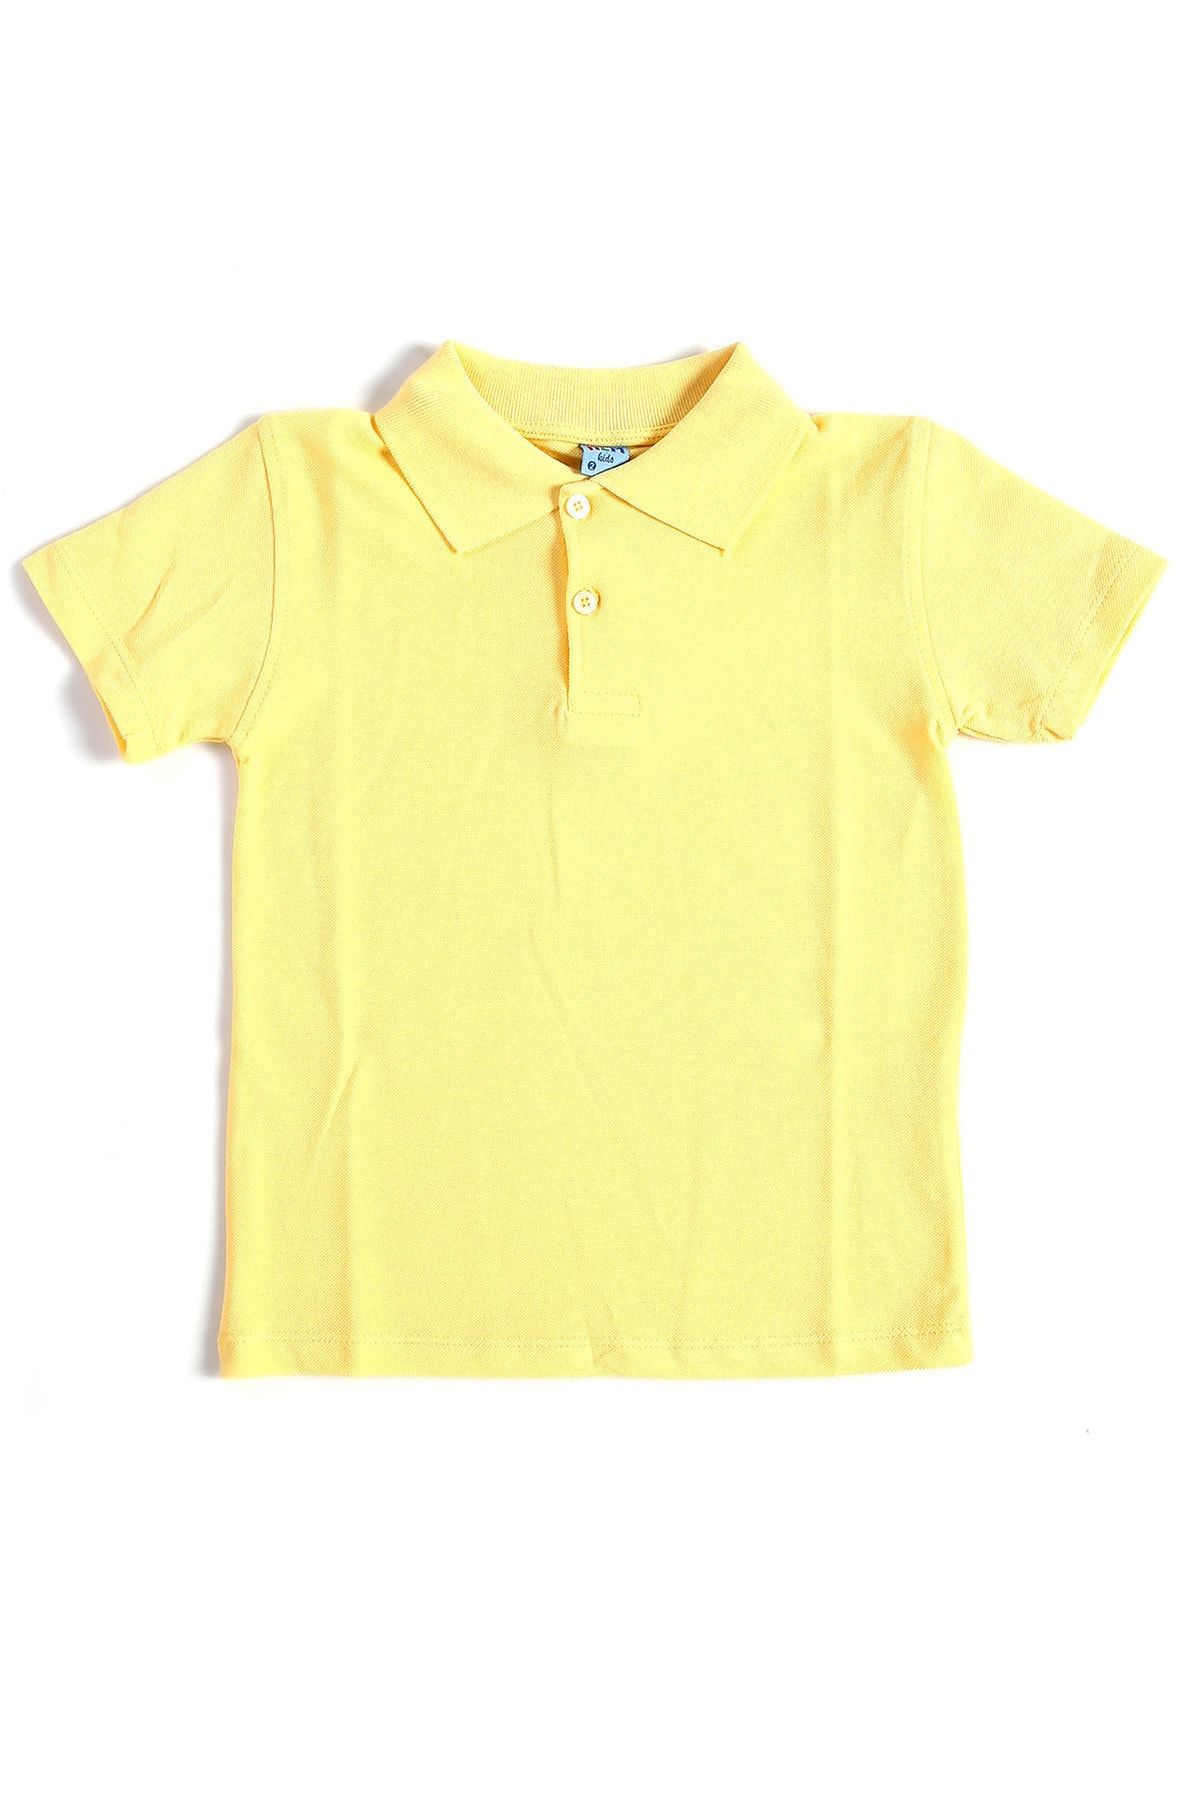 Alme Sarı Kısa Kol Çocuk Düz Renk Okul Lakos Tişört - 80238-Sarı